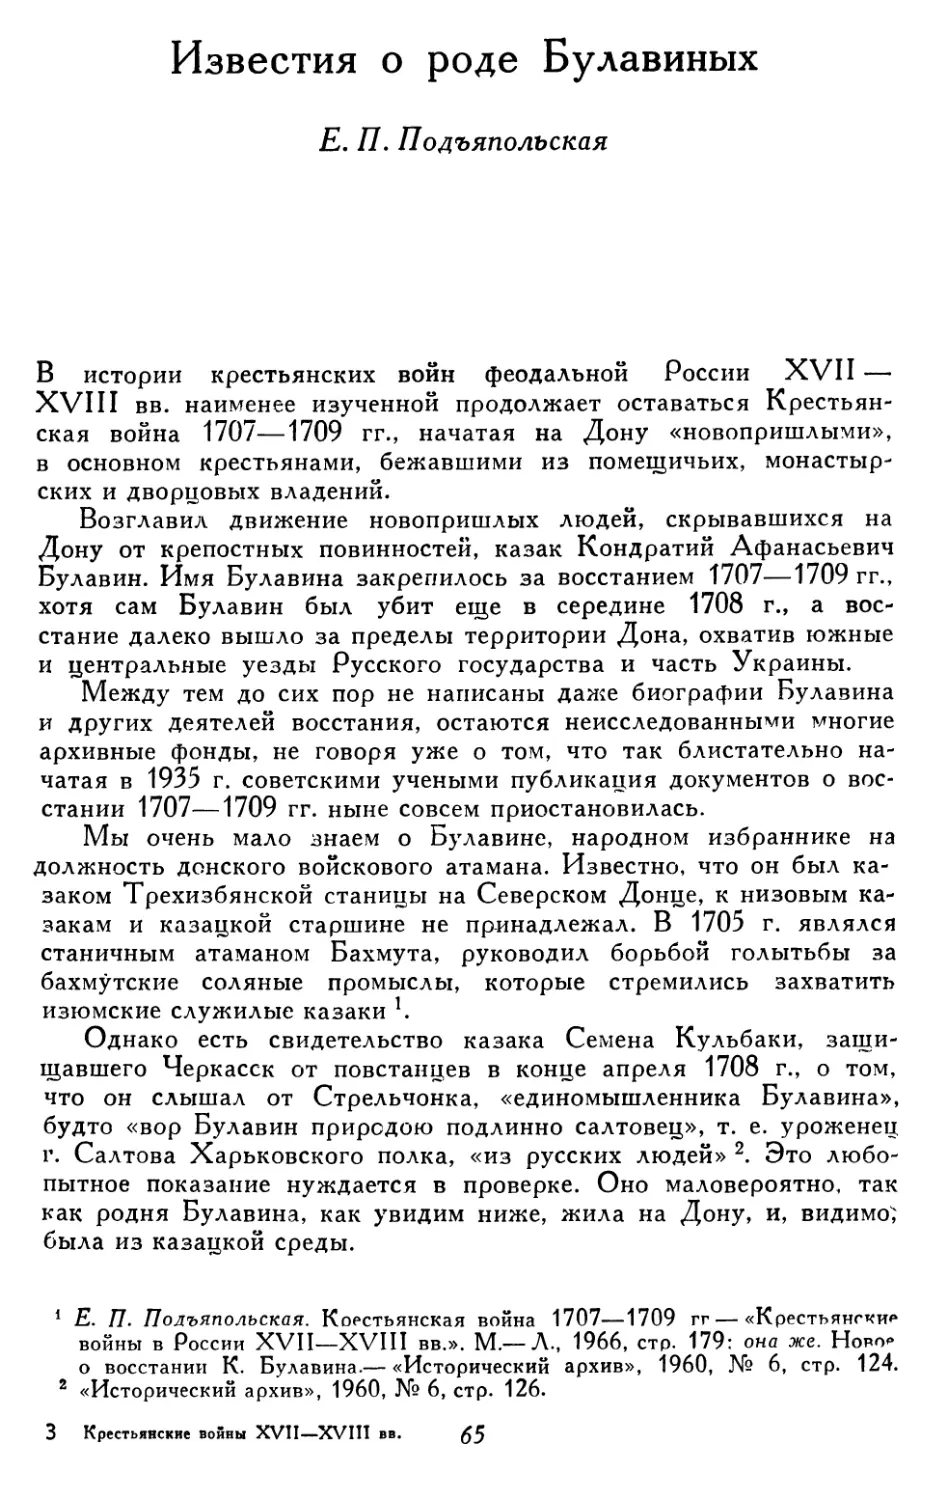 Сочинение по теме Крестьянские войны в России в XVII-XVIII вв. 